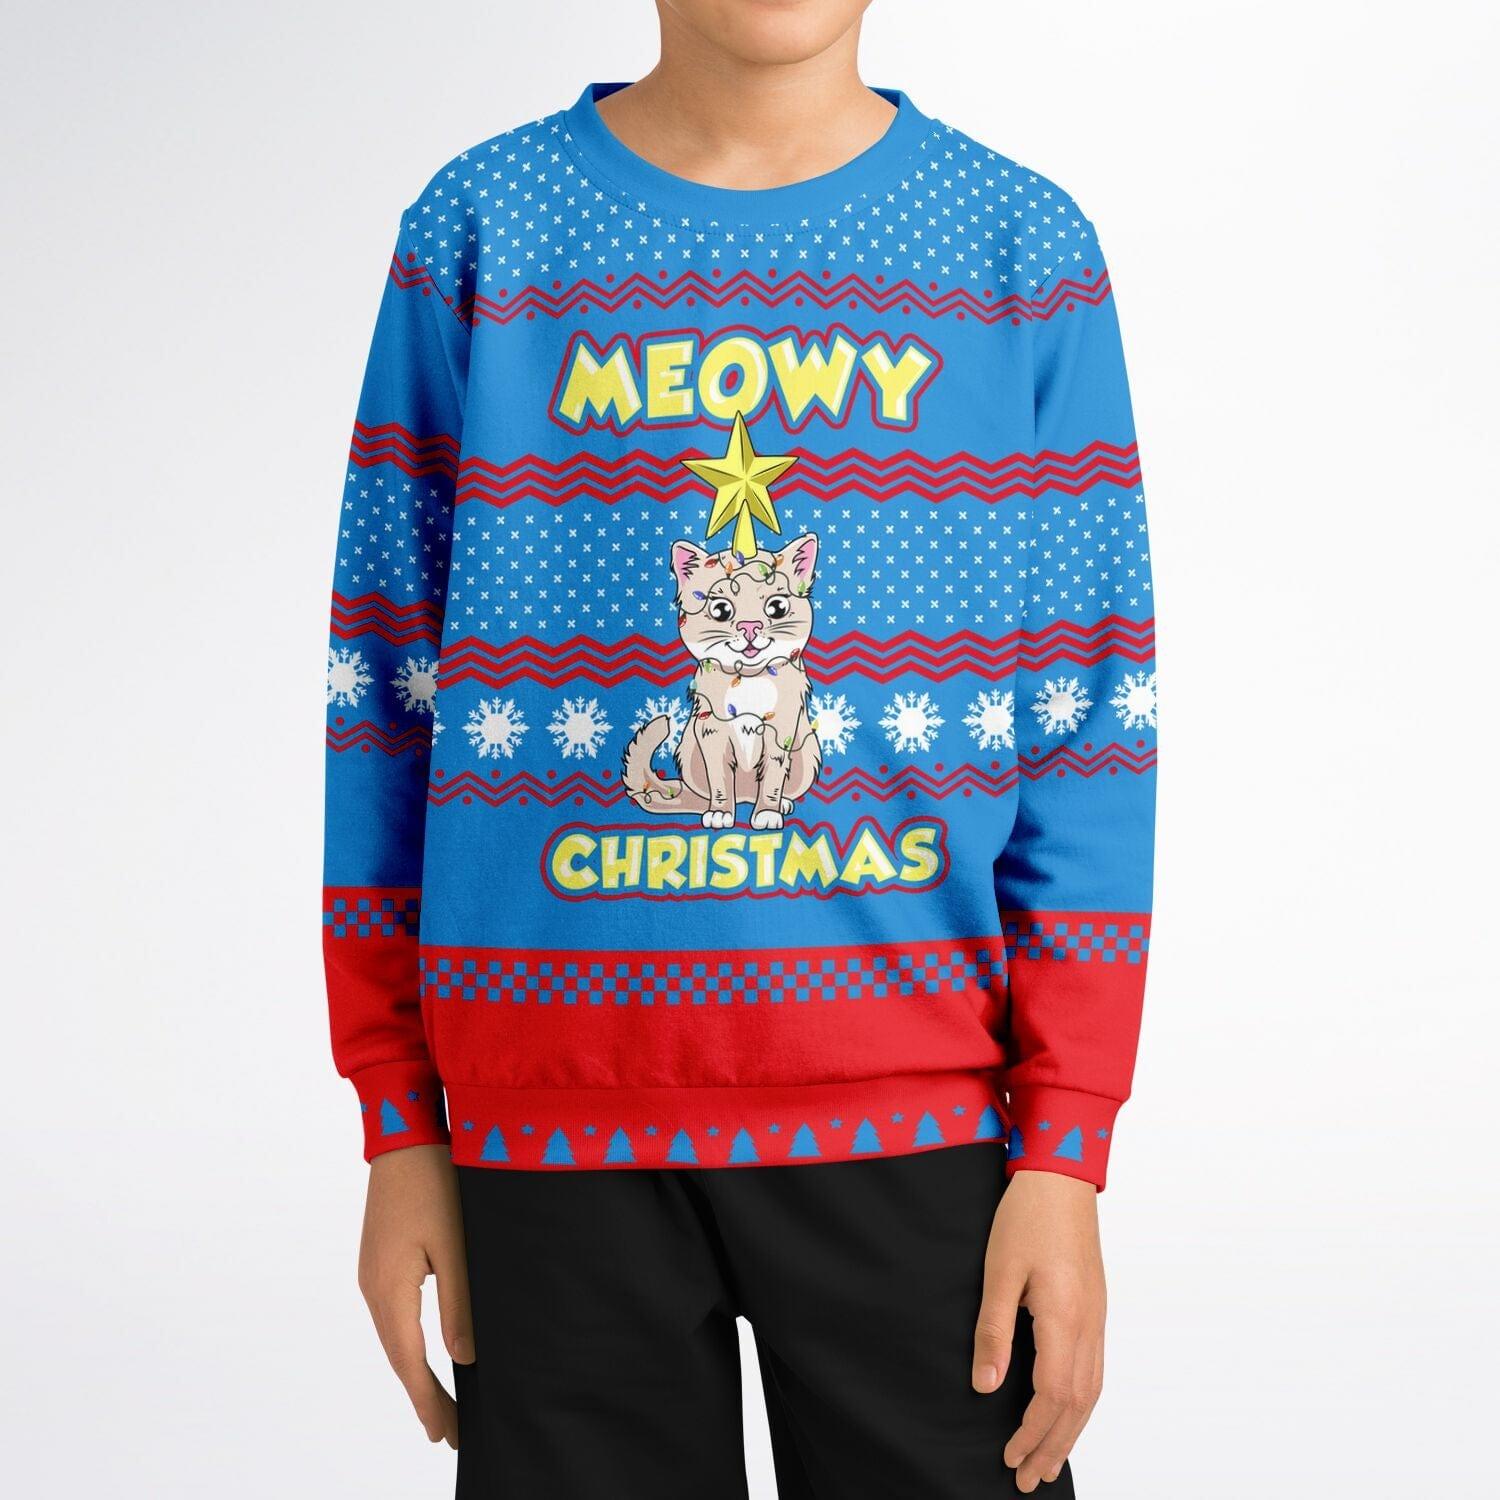 Meowy Christmas Kids Unisex Ugly Christmas Sweatshirt - TopKoalaTee